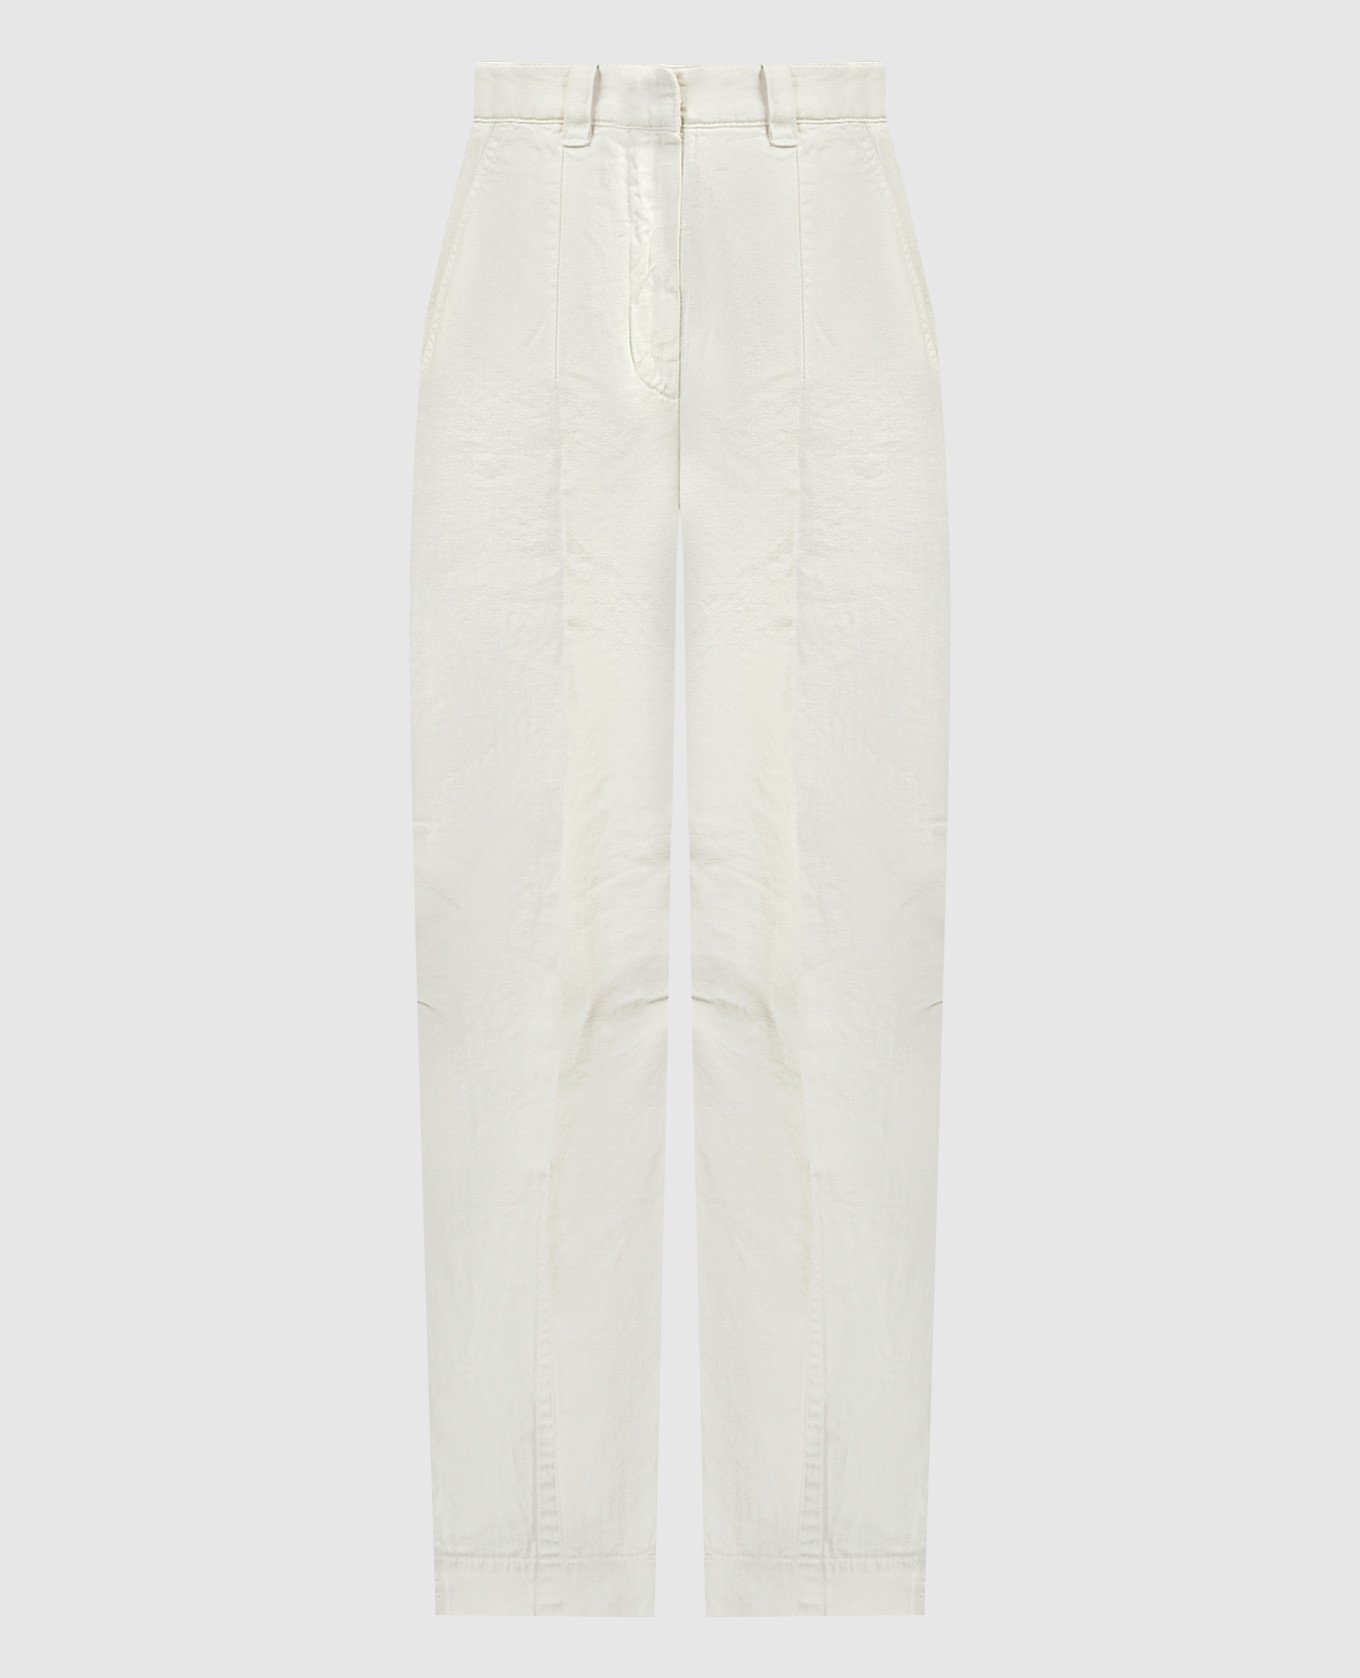 Белые брюки с логотипом патча.